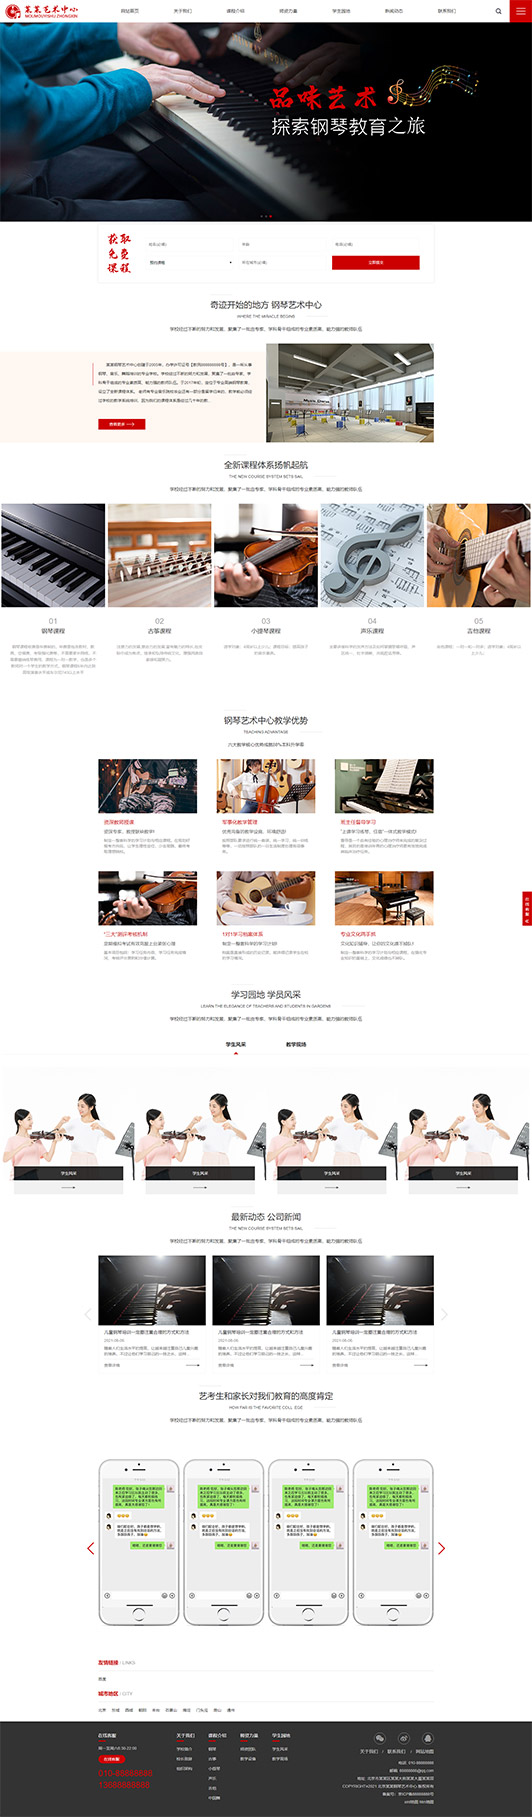 黔南钢琴艺术培训公司响应式企业网站